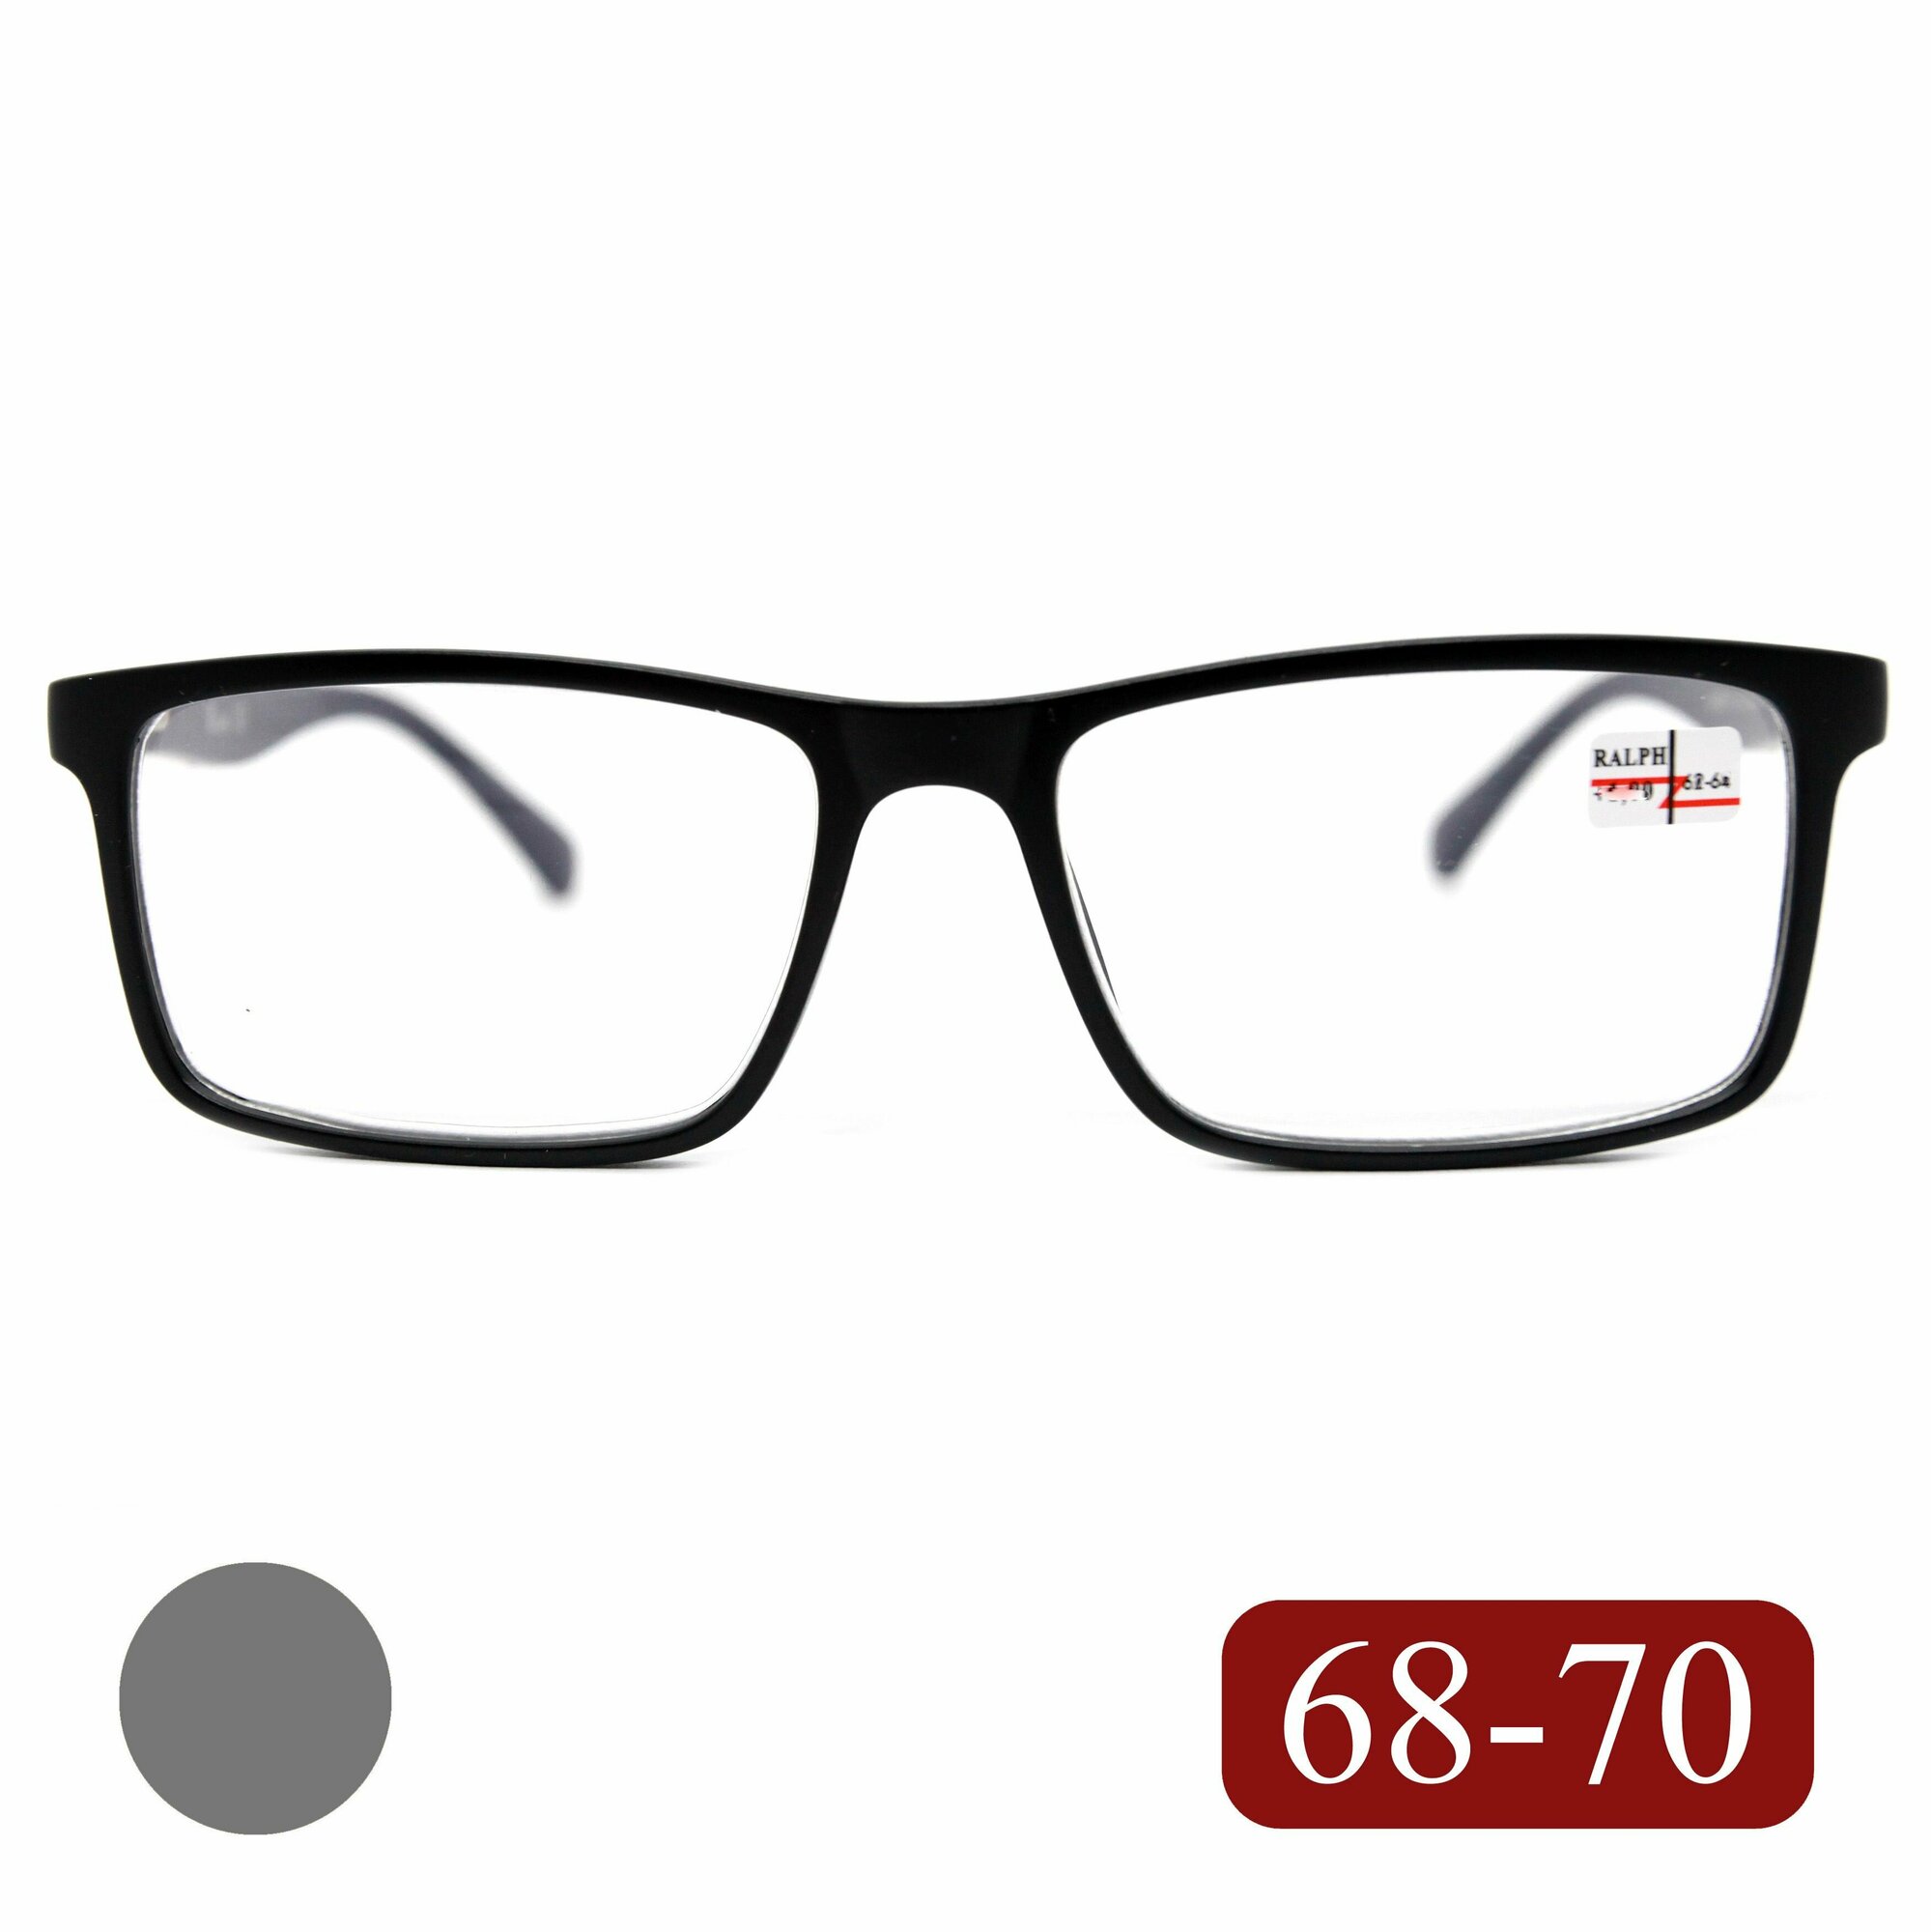 Мужские очки РЦ 68-70 для чтения (+4.50) RALPH 0682 C1, без футляра, цвет черный-матовый, заушник серый, линзы пластик, РЦ 68-70